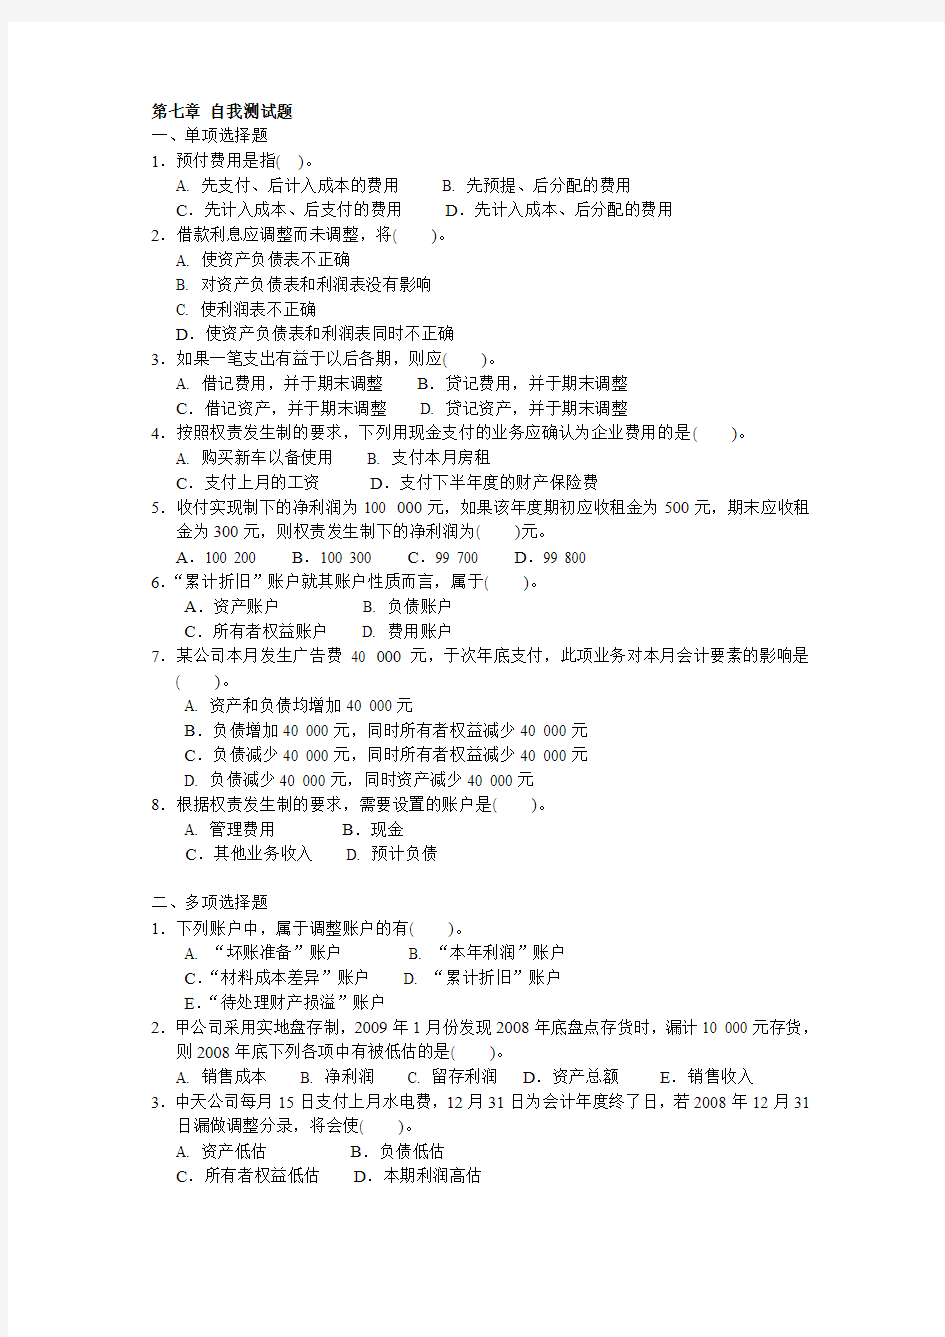 上海财大会原第7—9章自我测试题